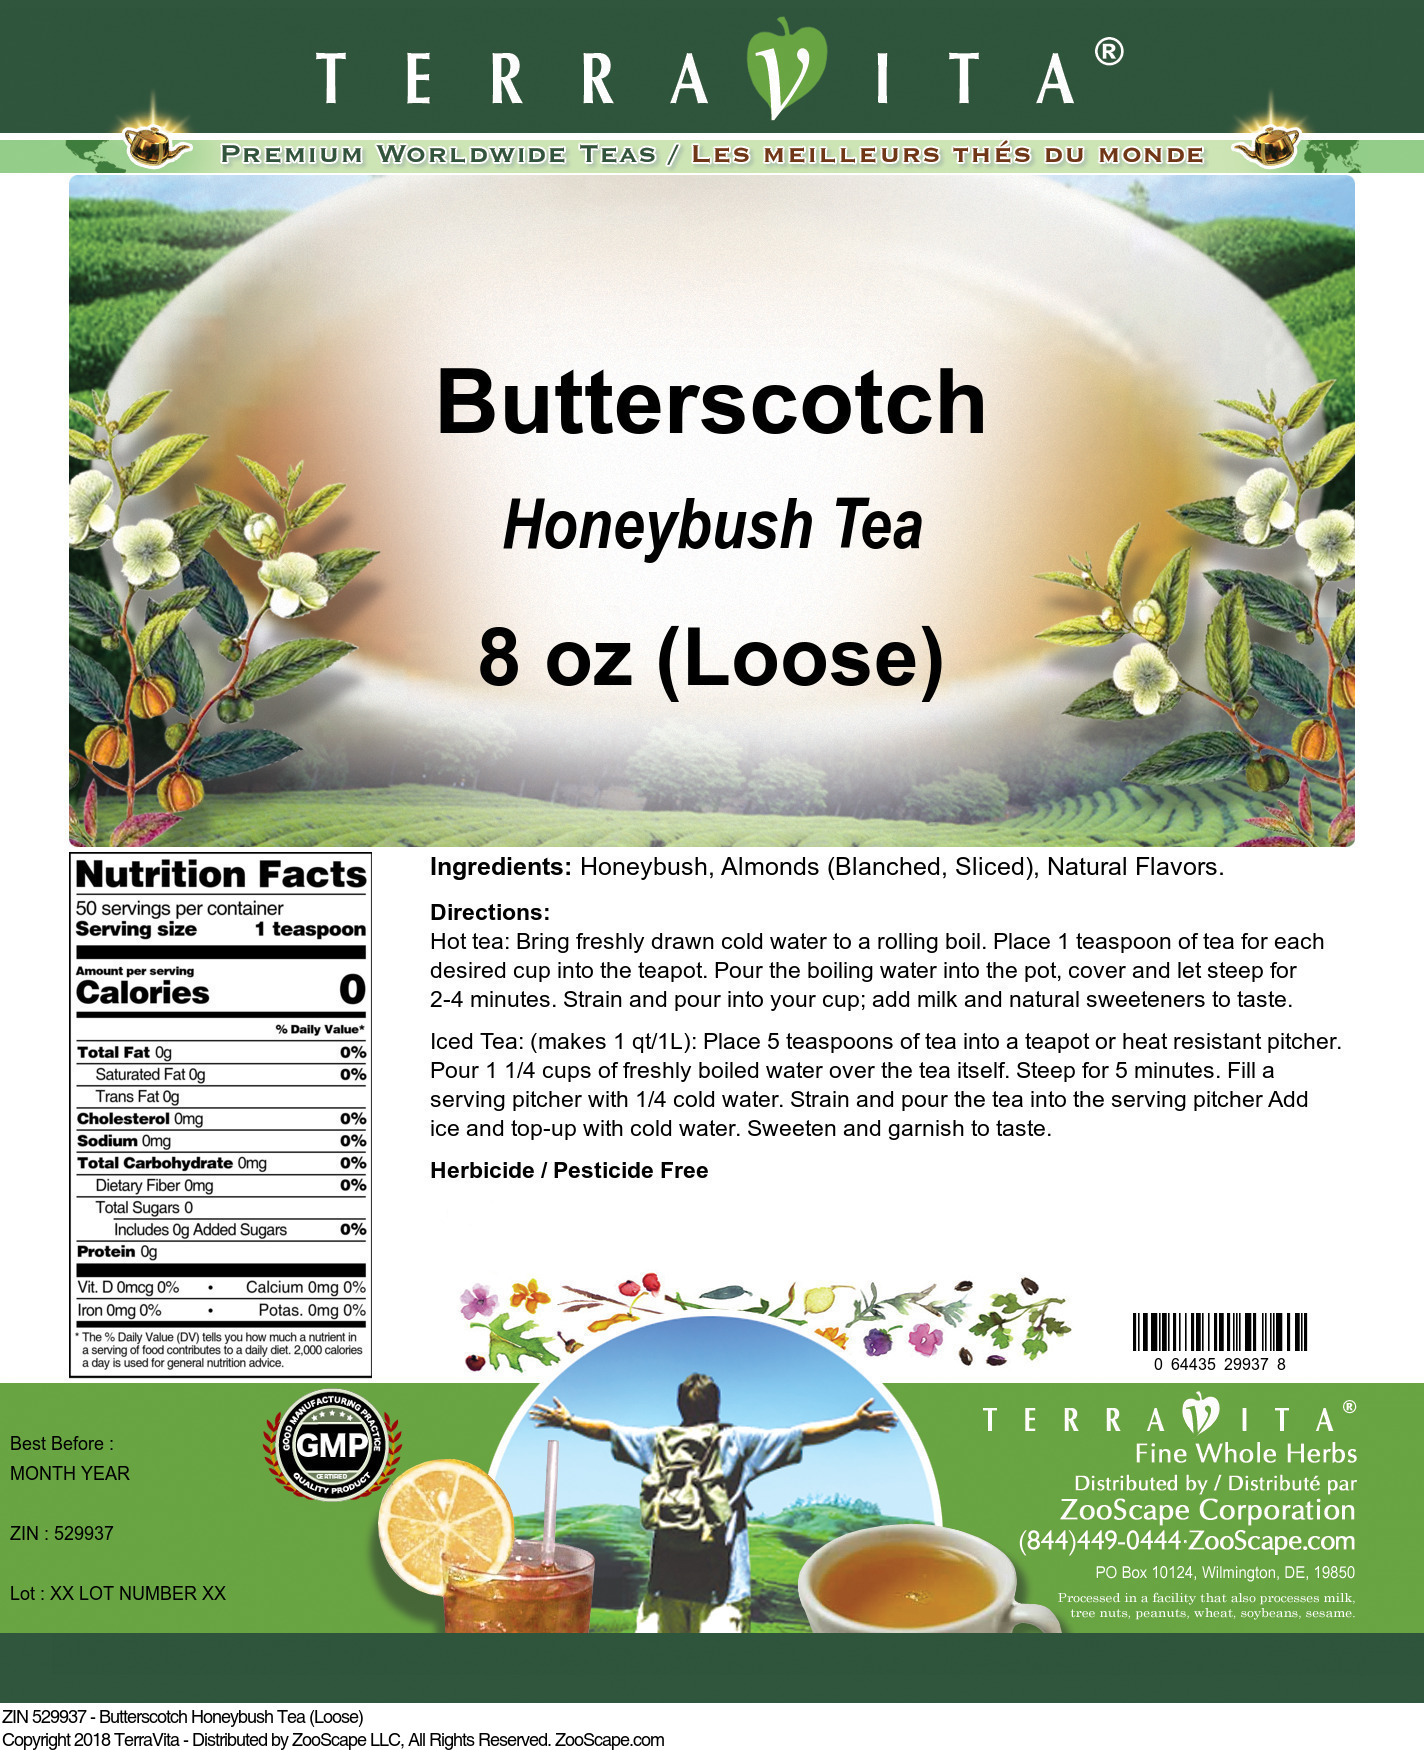 Butterscotch Honeybush Tea (Loose) - Label